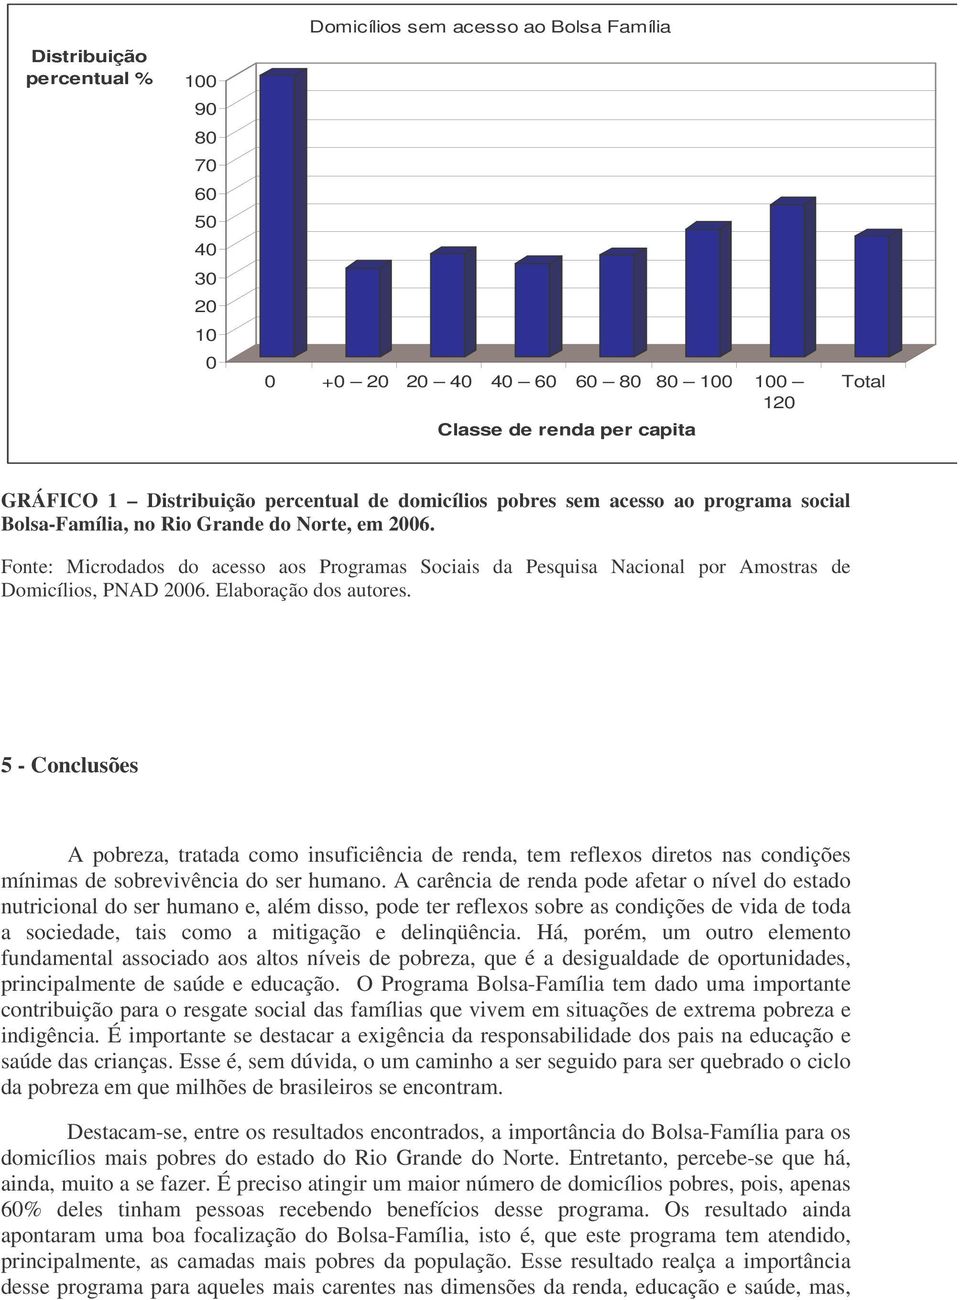 Fonte: Microdados do acesso aos Programas Sociais da Pesquisa Nacional por Amostras de Domicílios, PNAD 2006. Elaboração dos autores.